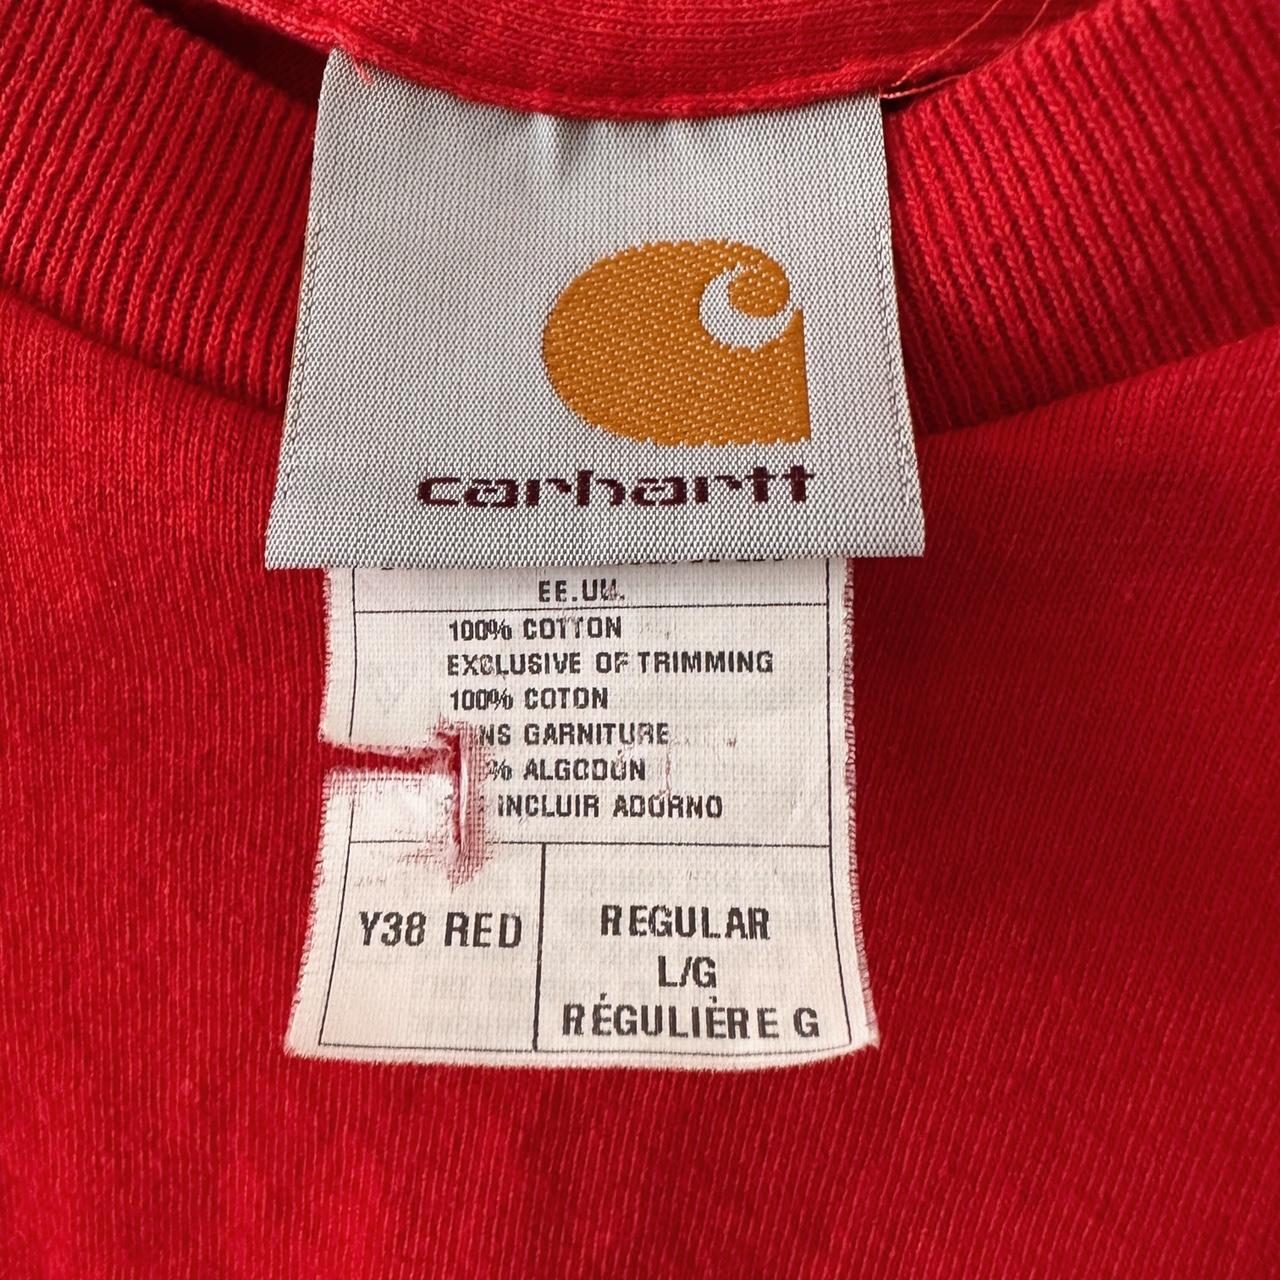 Carhartt Red Pocket T-Shirt size large #carhartt... - Depop